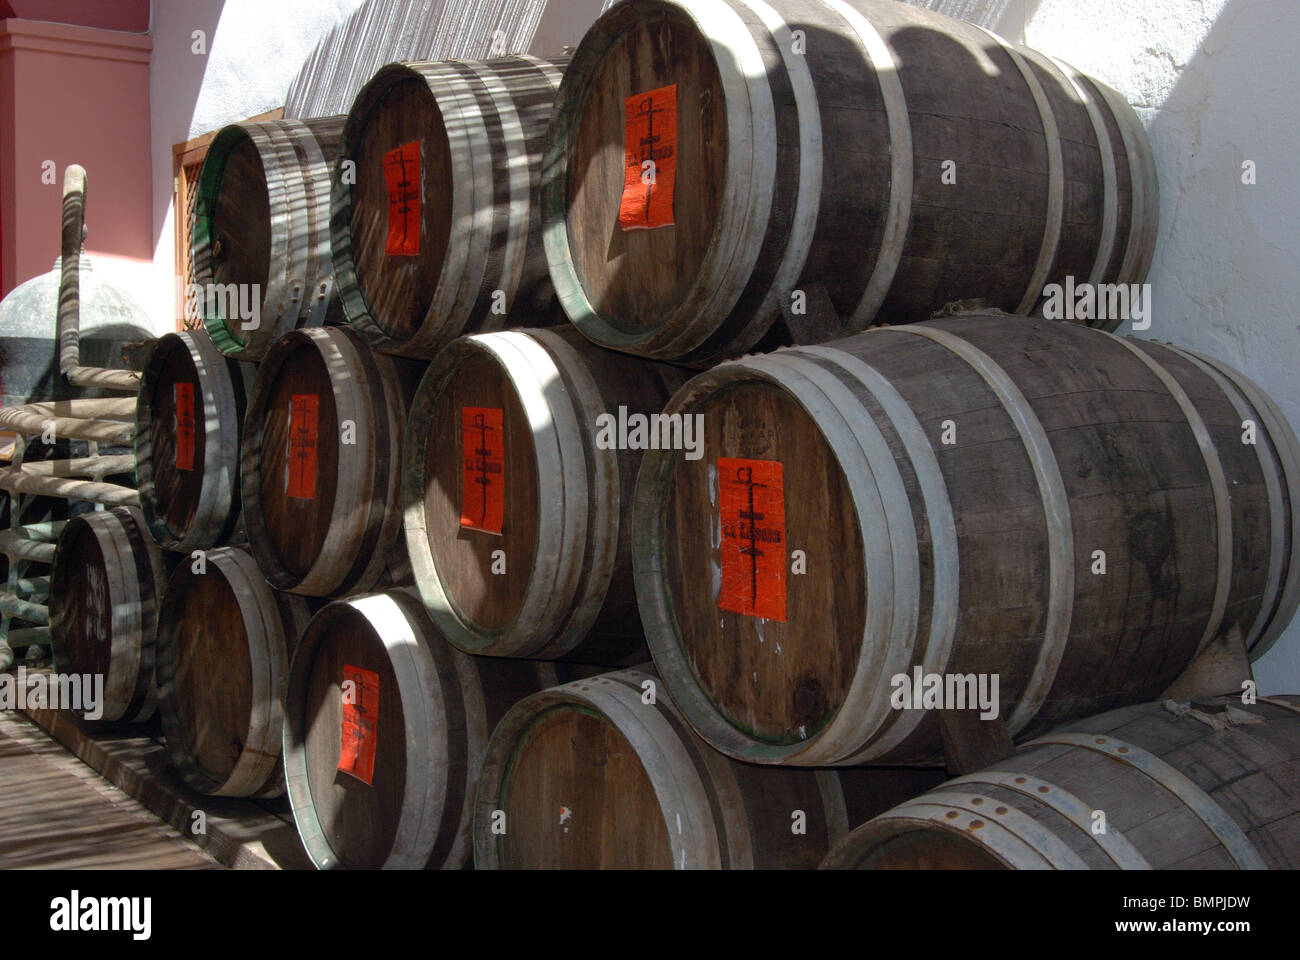 Wine barrels in the Museo del vino de Ronda (museum), Ronda, Malaga Province, Andalucia, Spain, Western Europe. Stock Photo